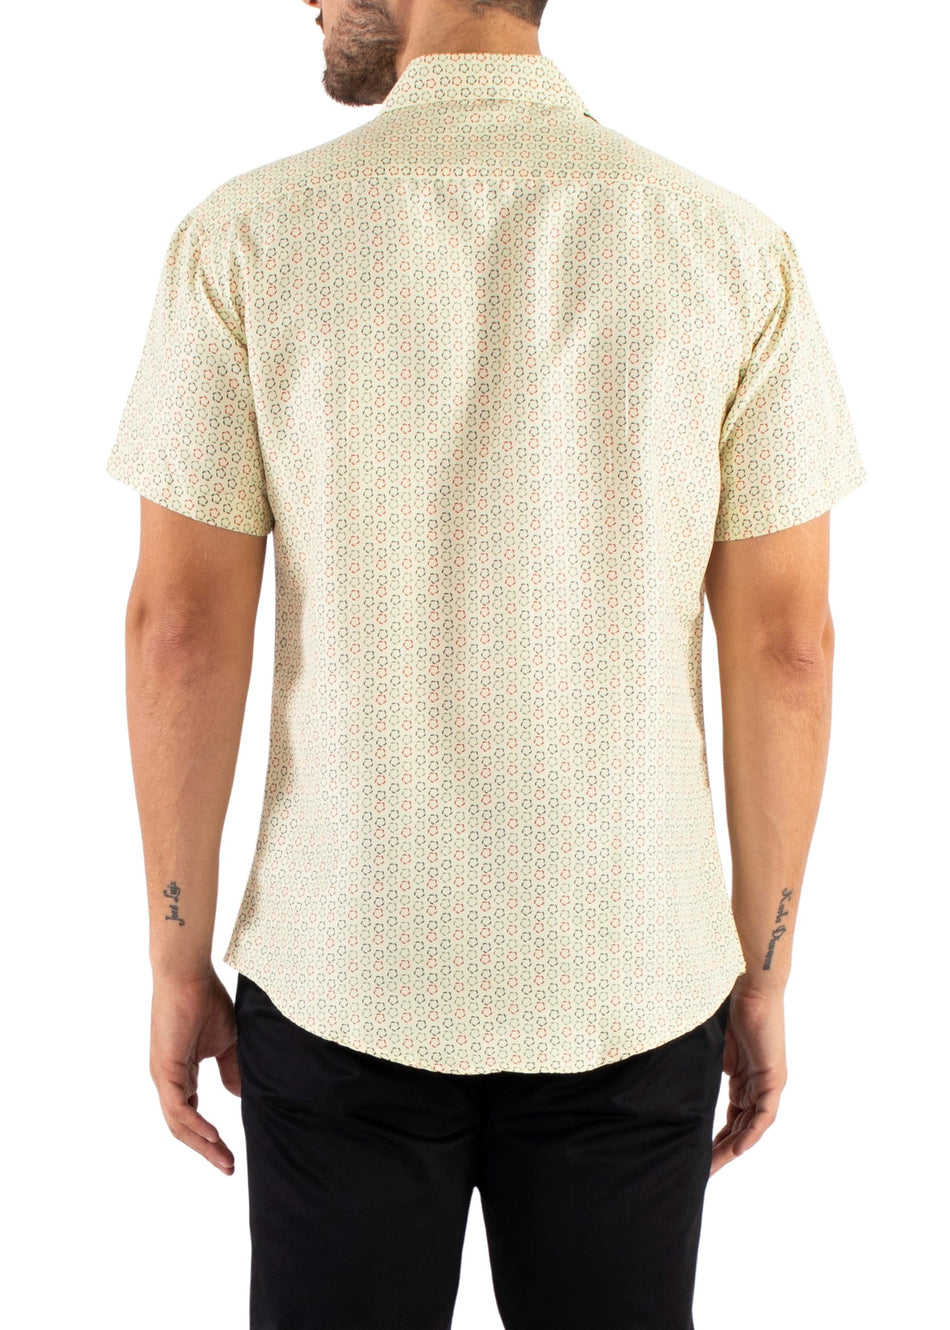 222064 - Yellow Button Up Short Sleeve Shirt